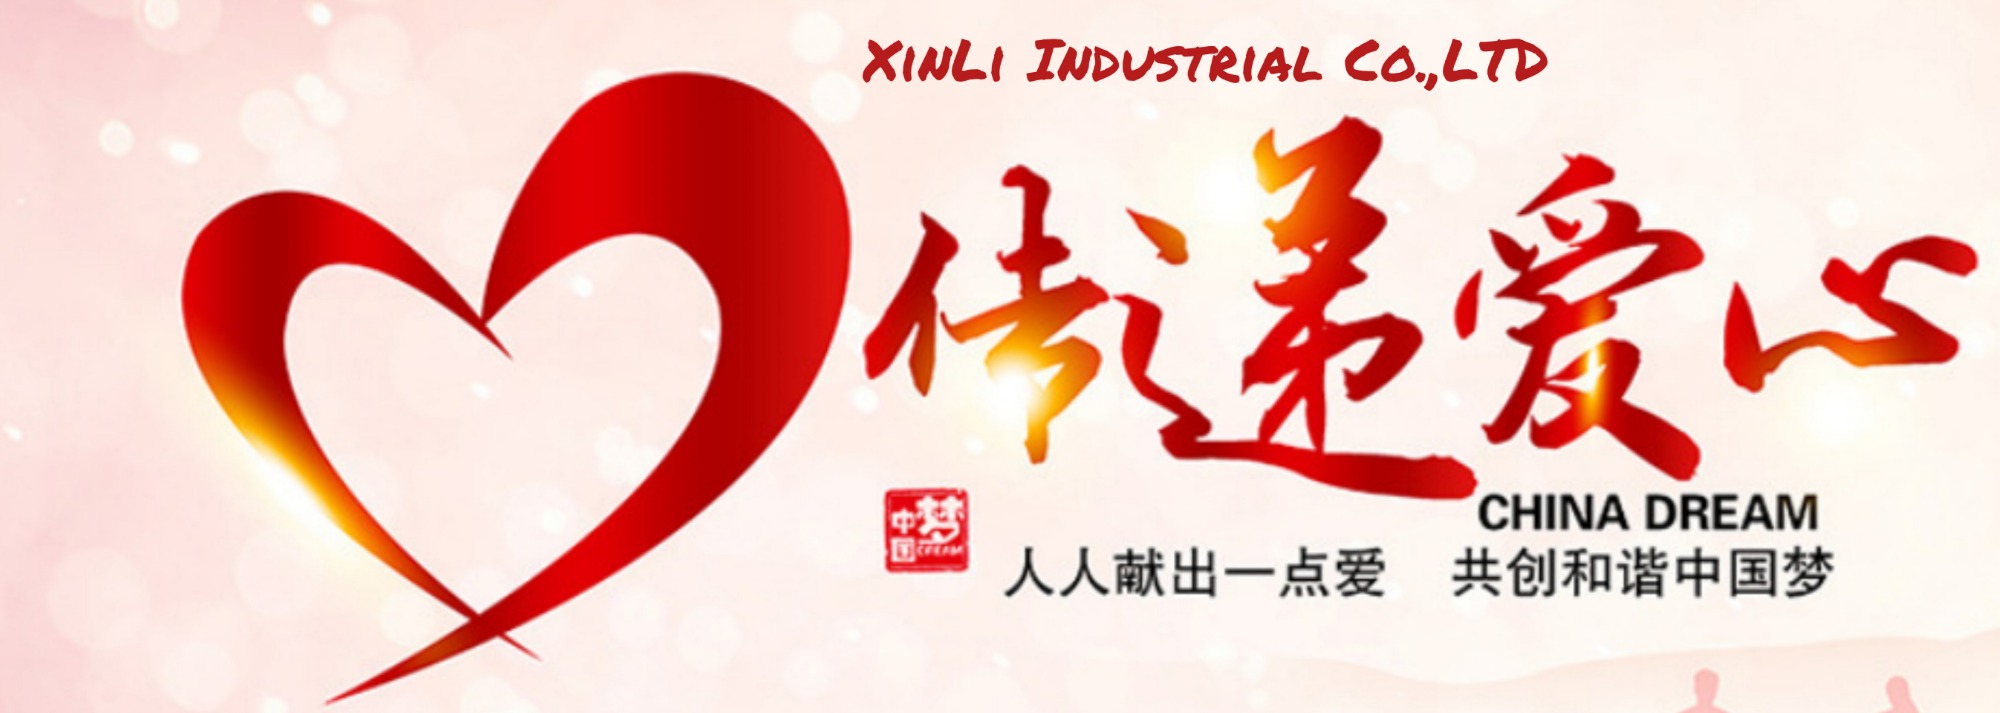 XinLi Charity Aid